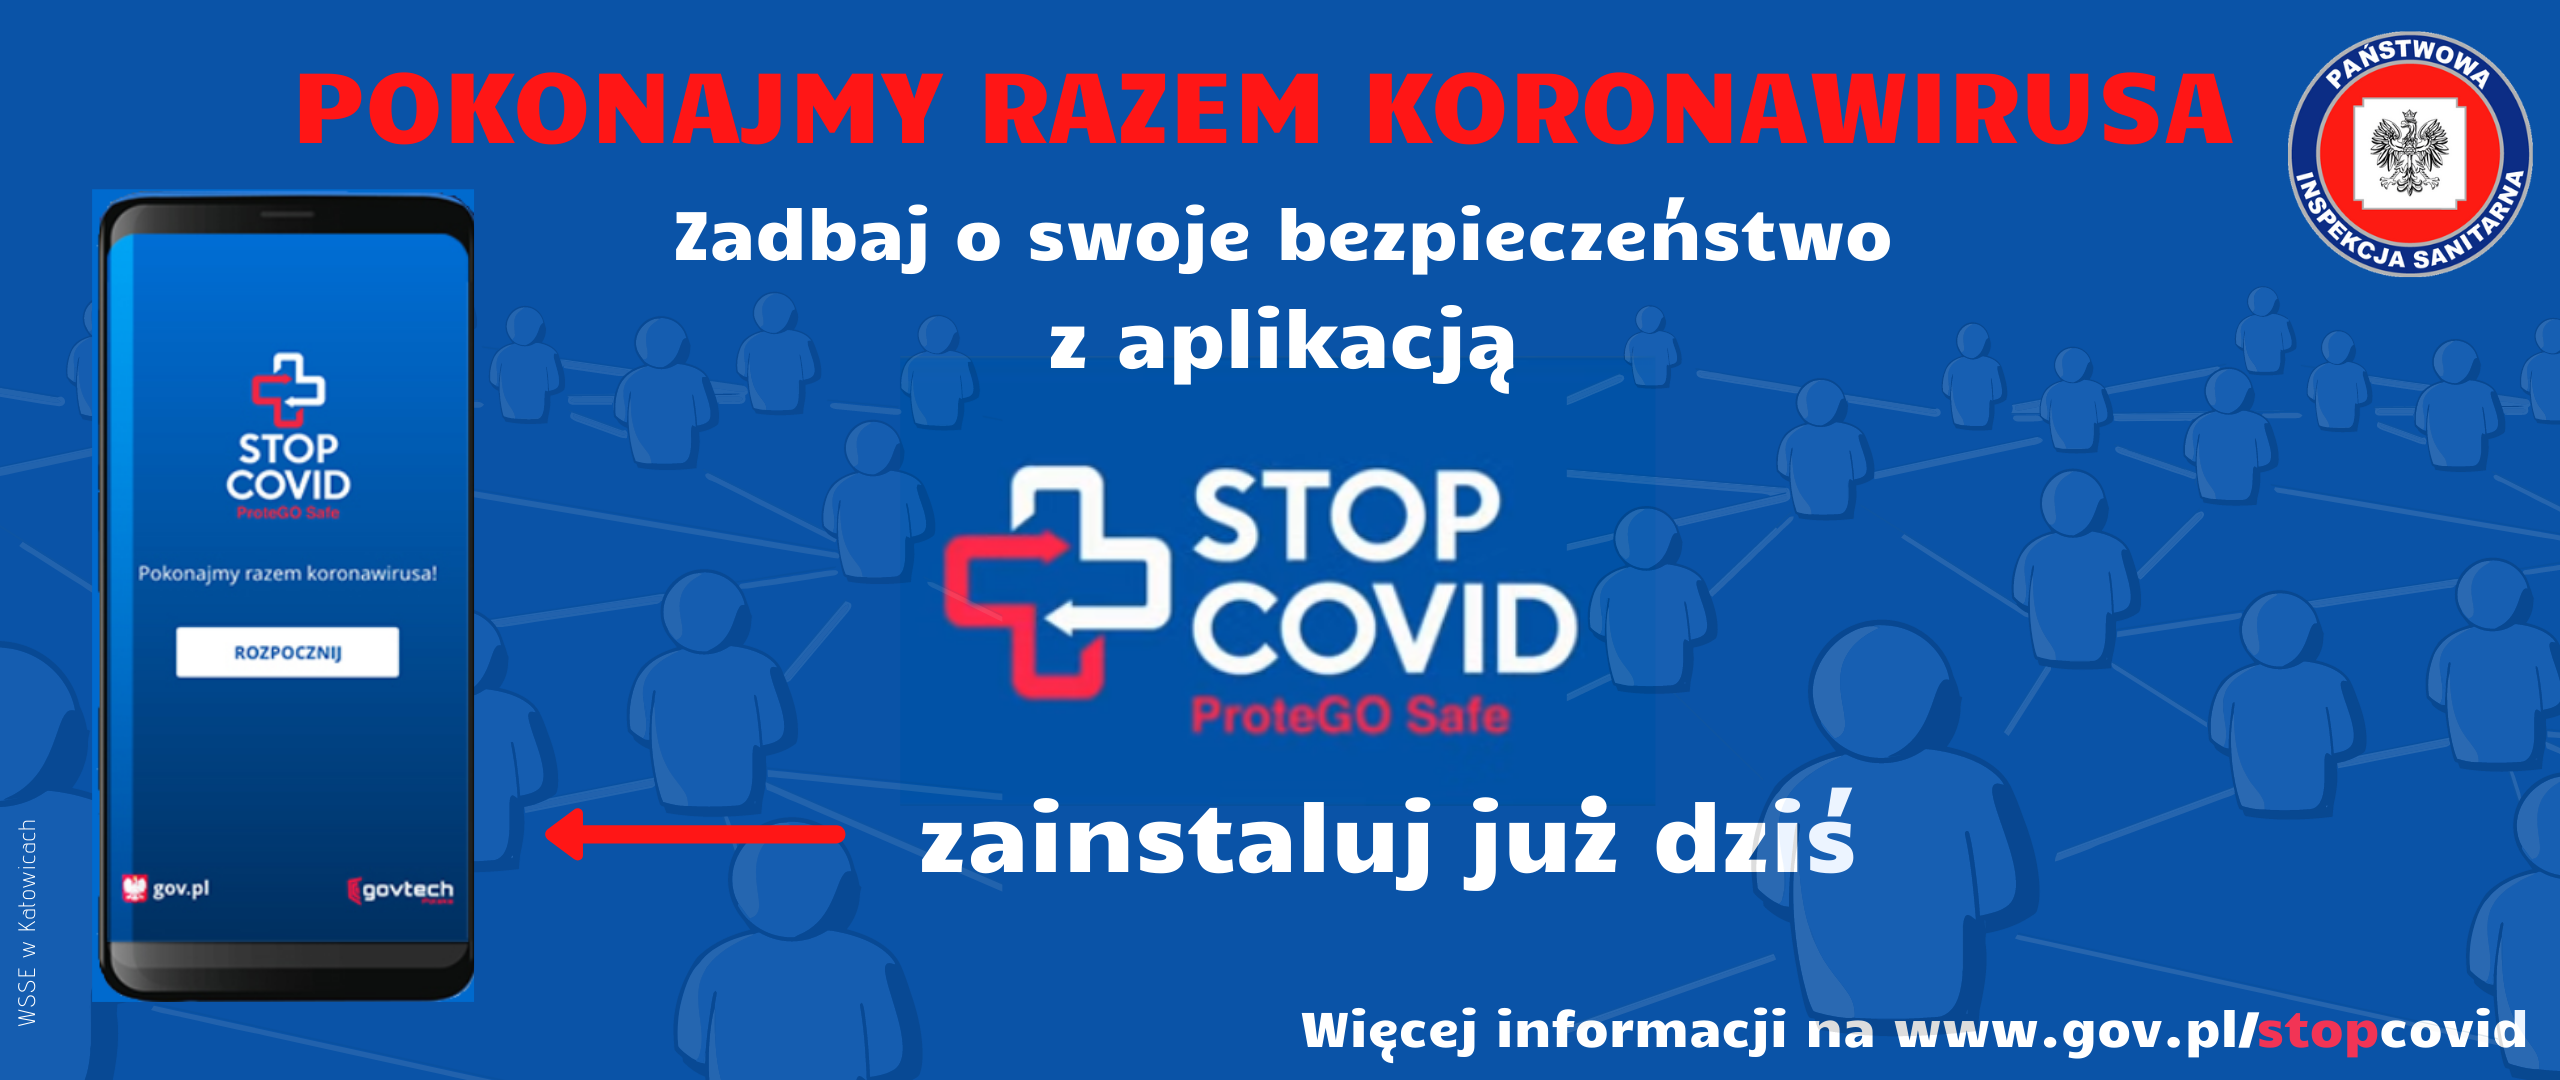 Akcja promująca aplikację STOP COVID ProteGo Safe